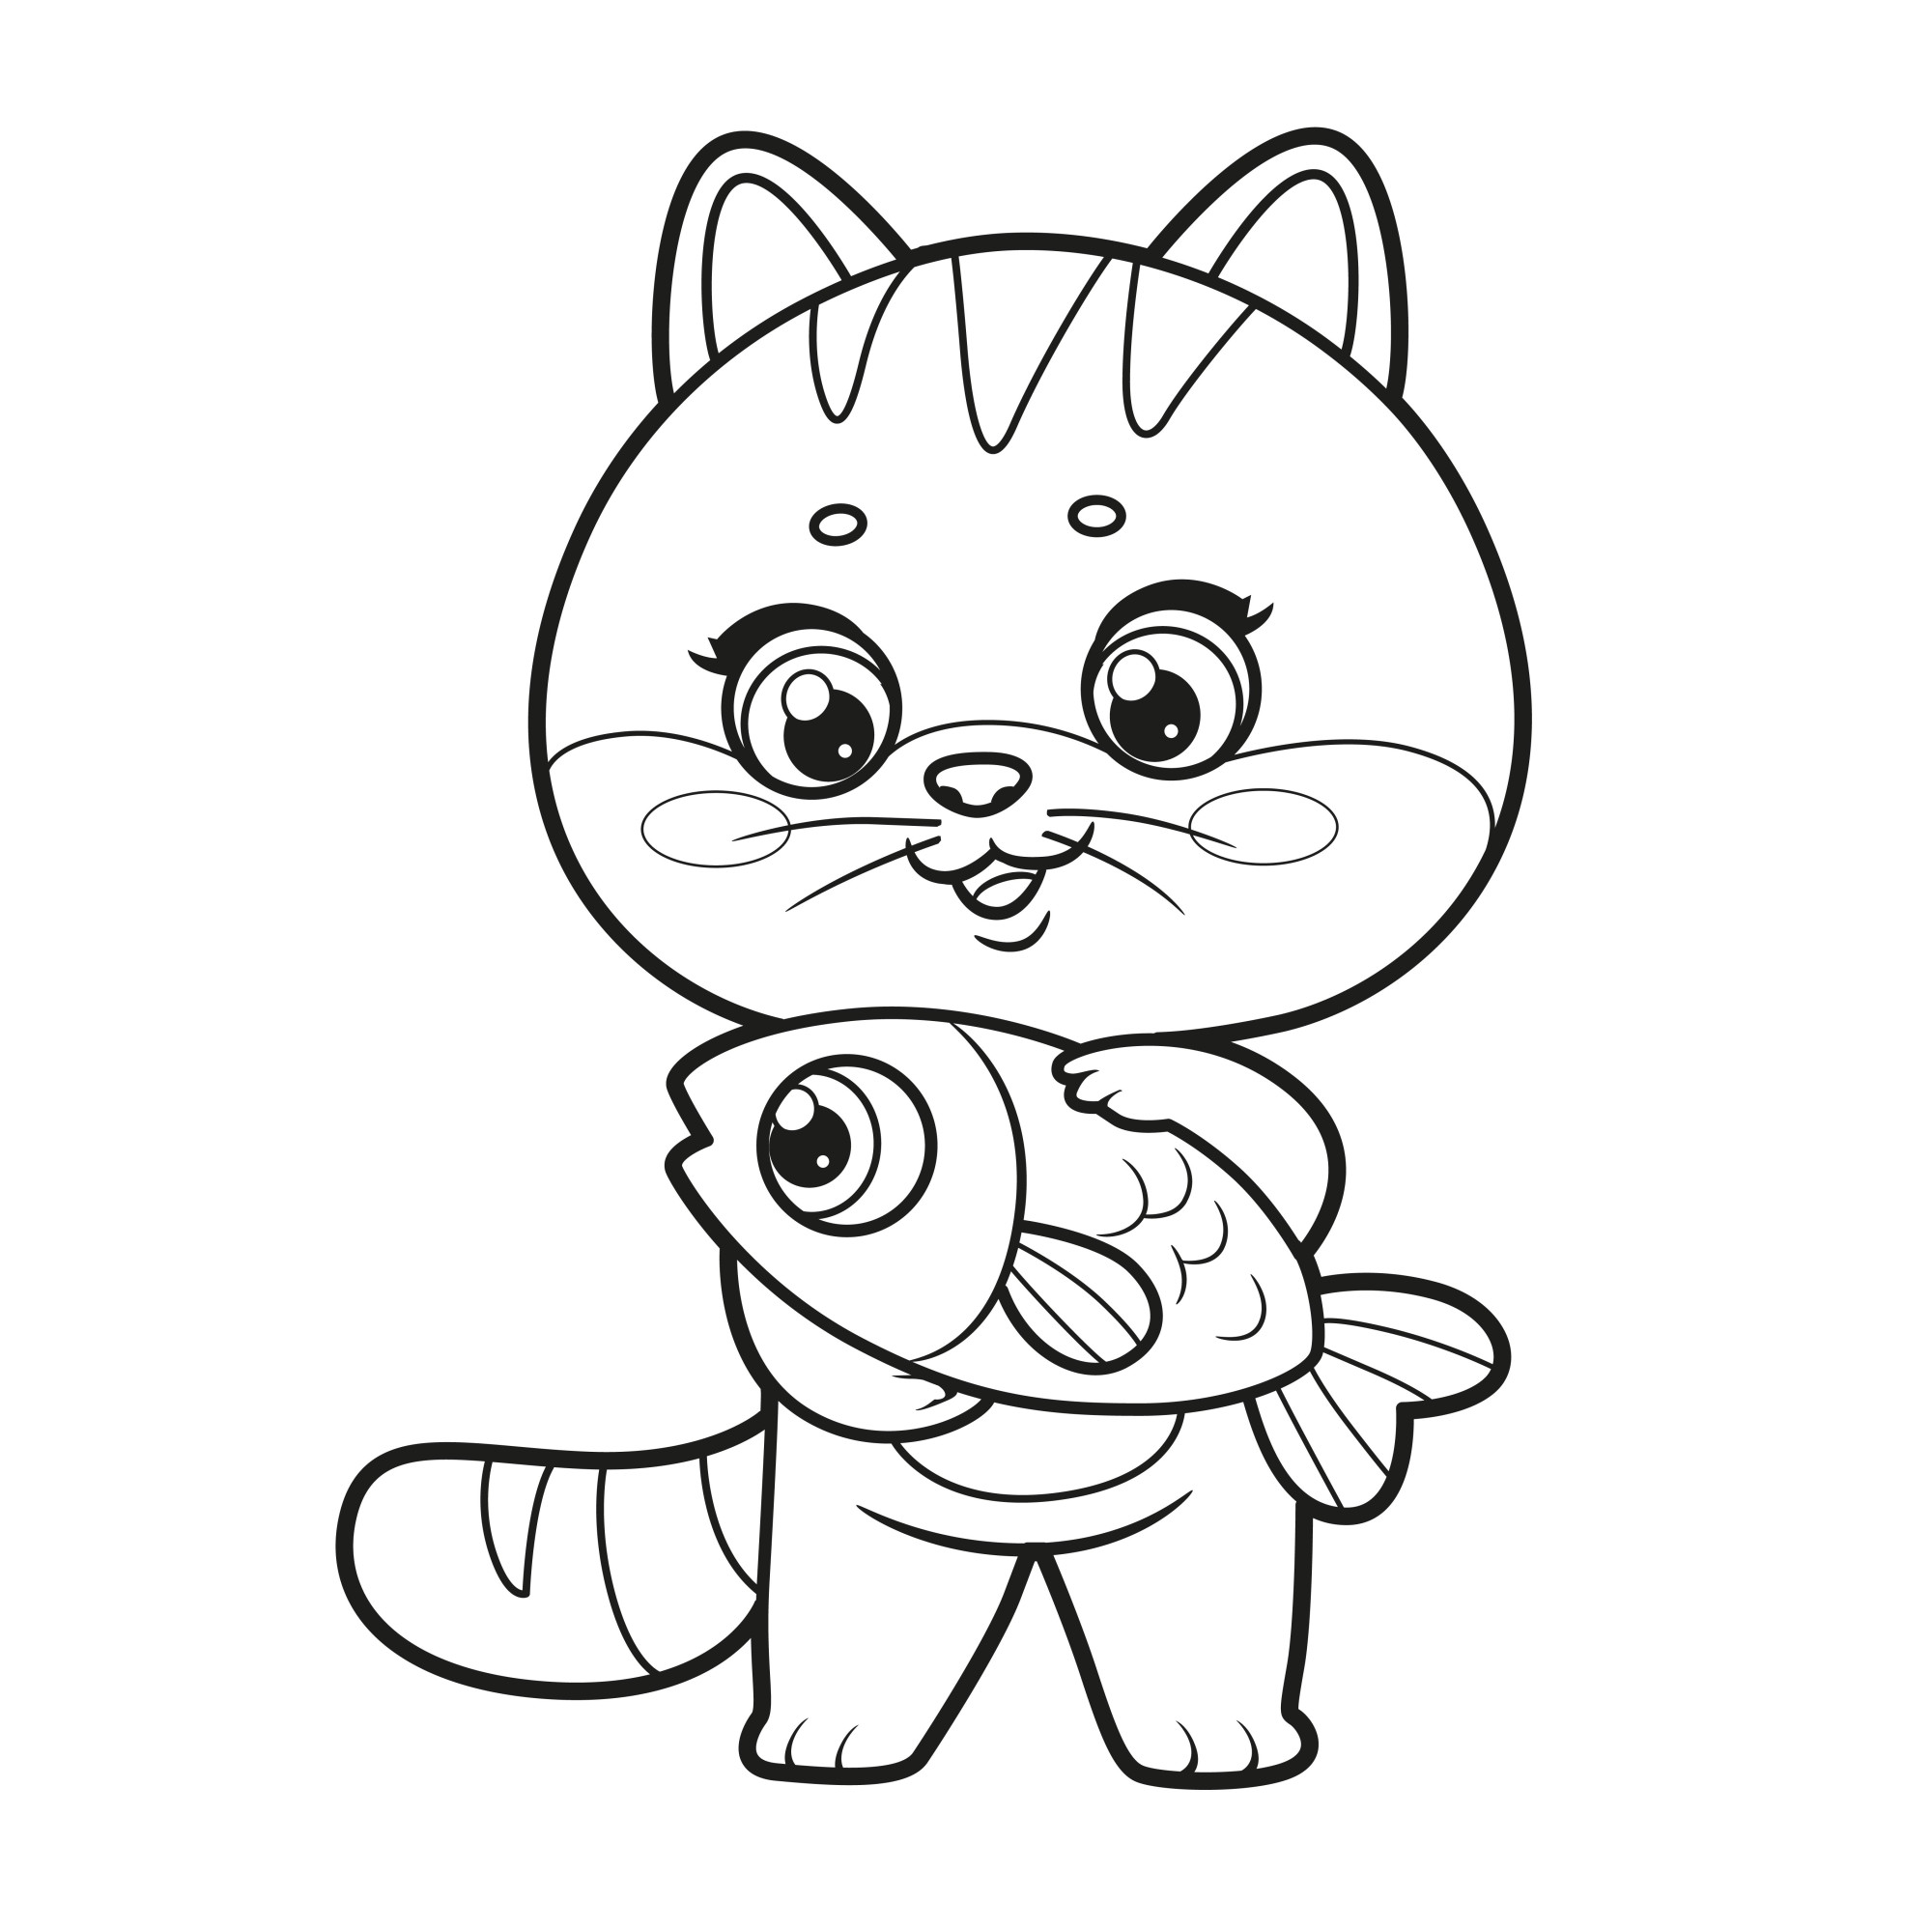 Раскраска для детей: мультяшный котенок с рыбкой в лапах